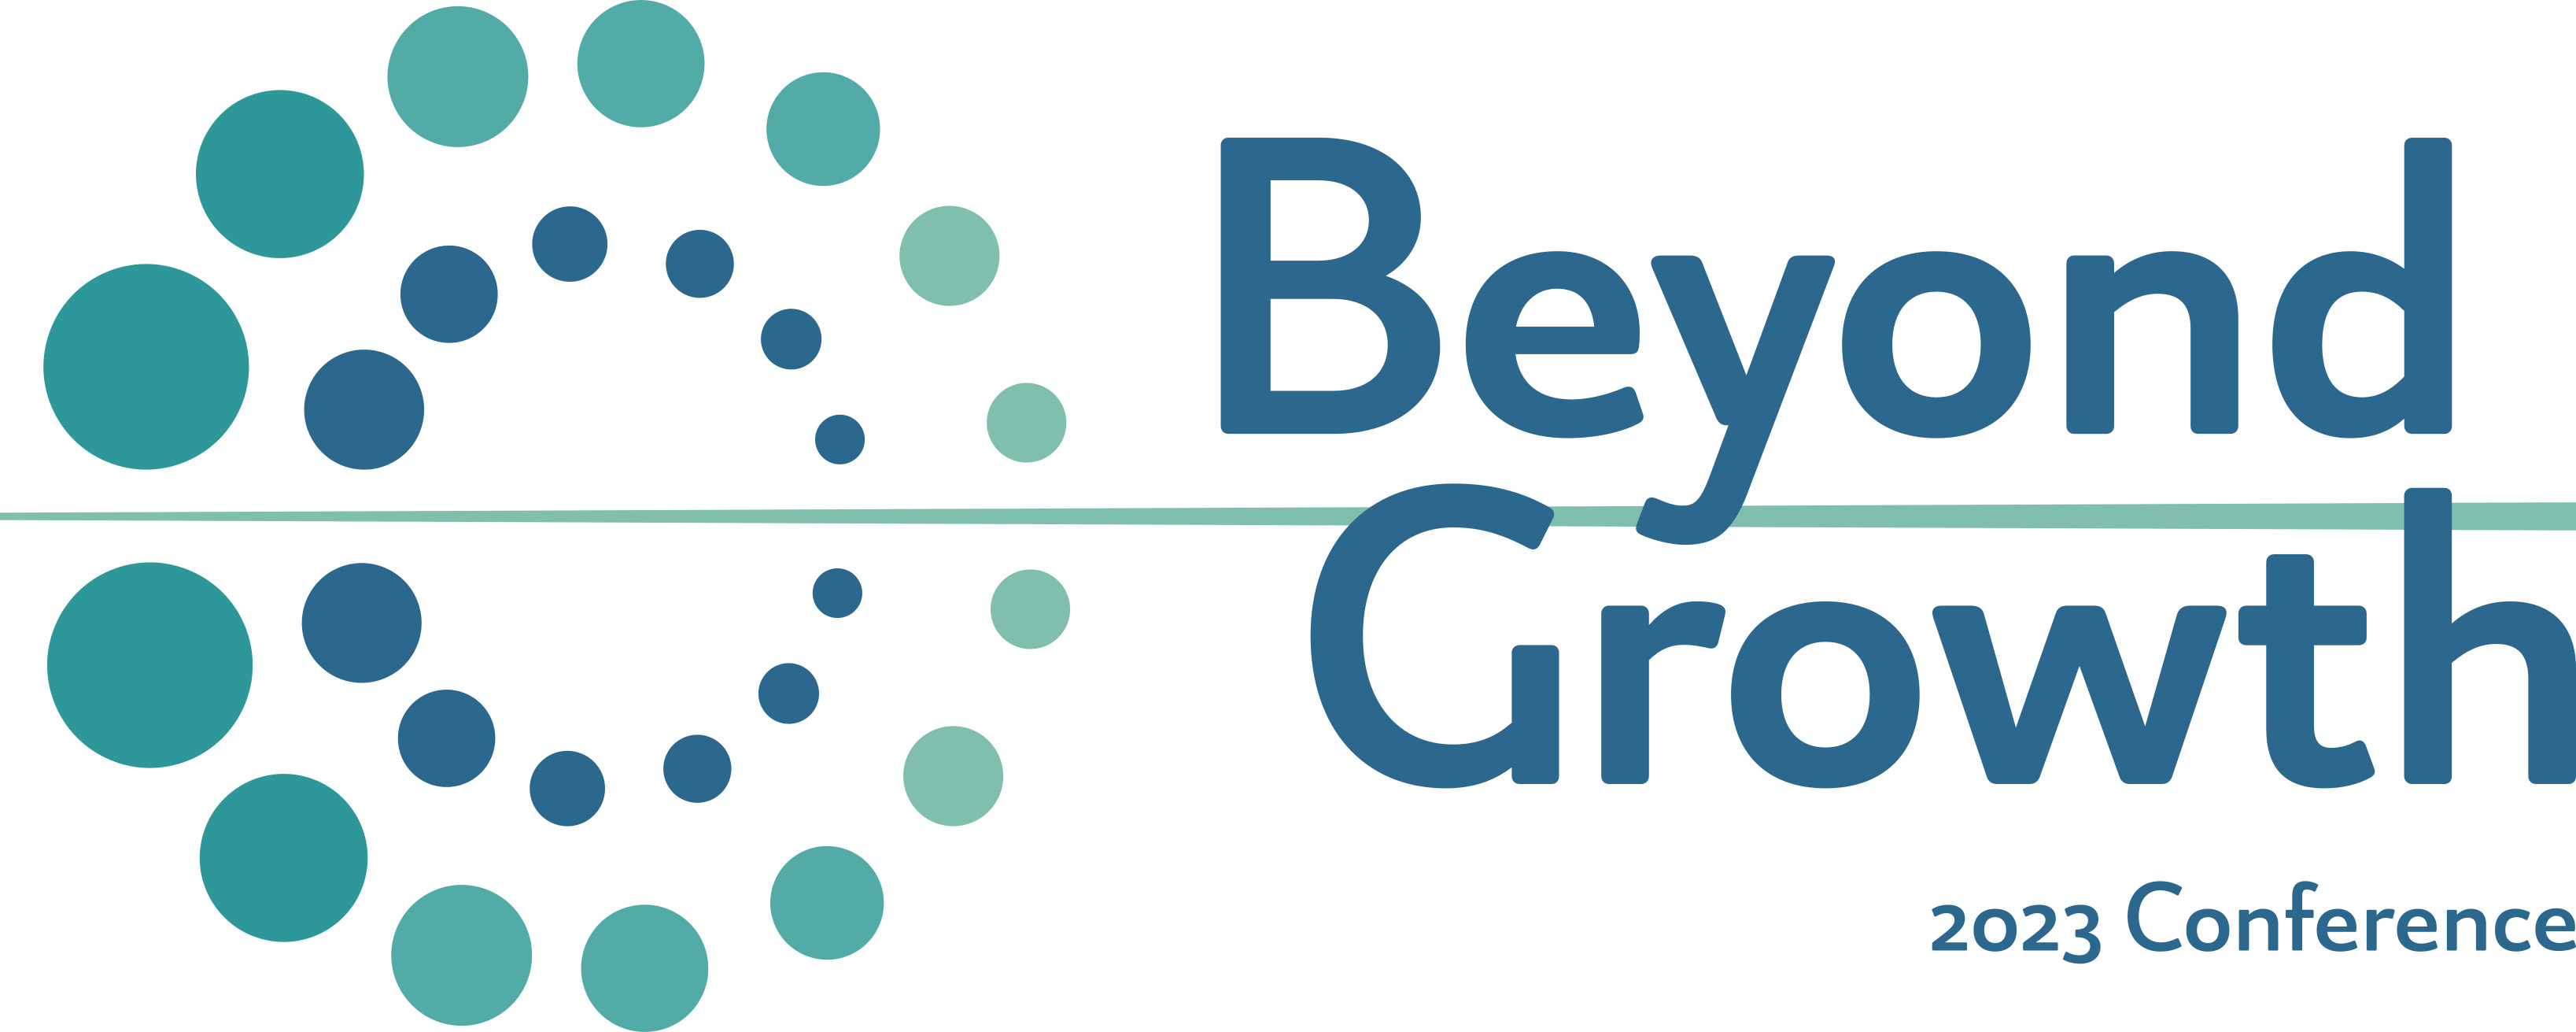 Beyond growth logo